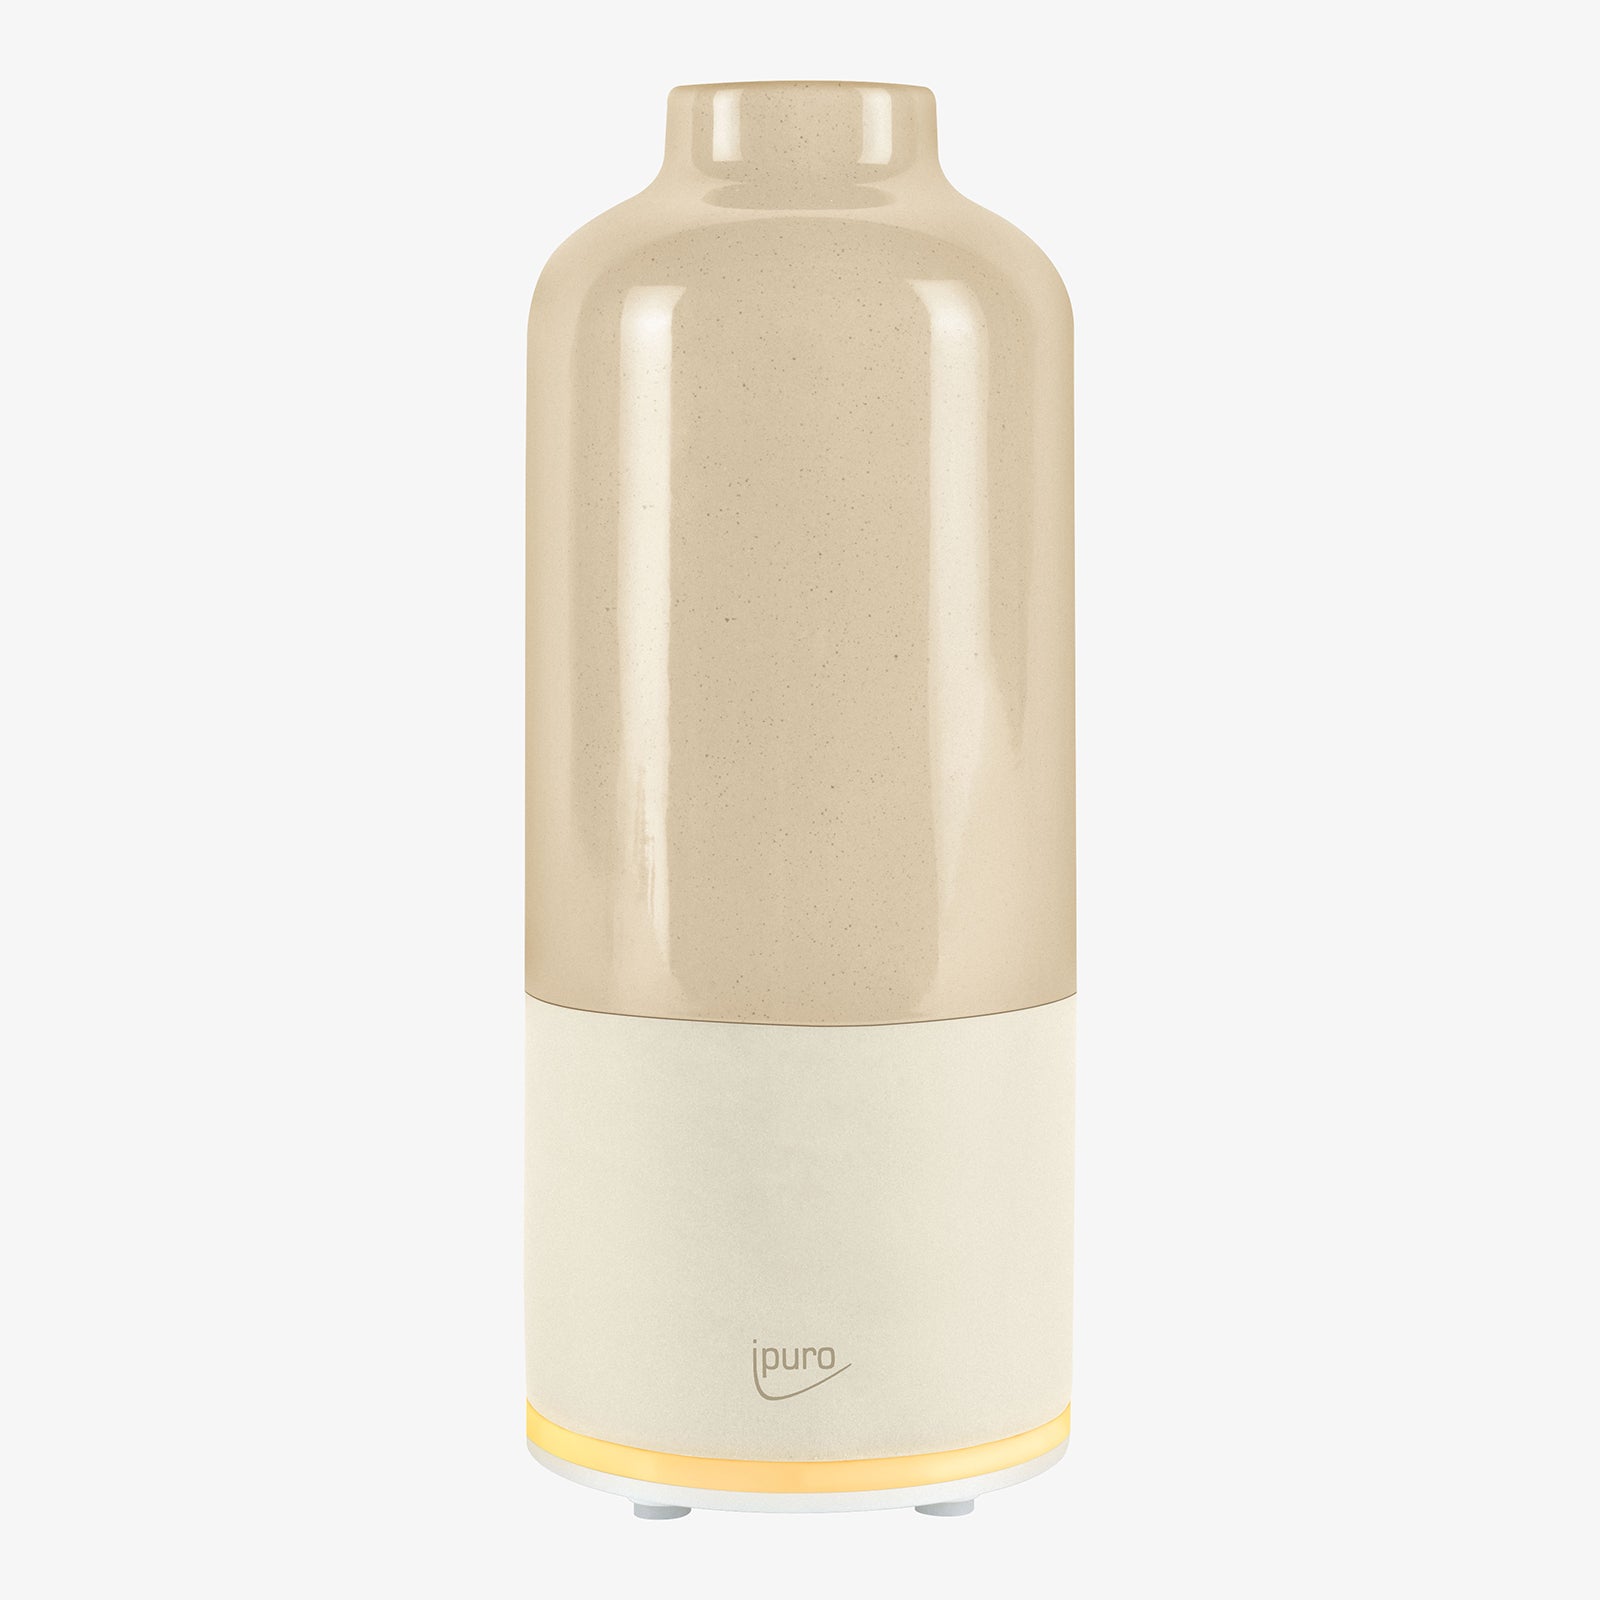 AIR SONIC ipuro aroma bottle Electric aroma diffuser – IPURO